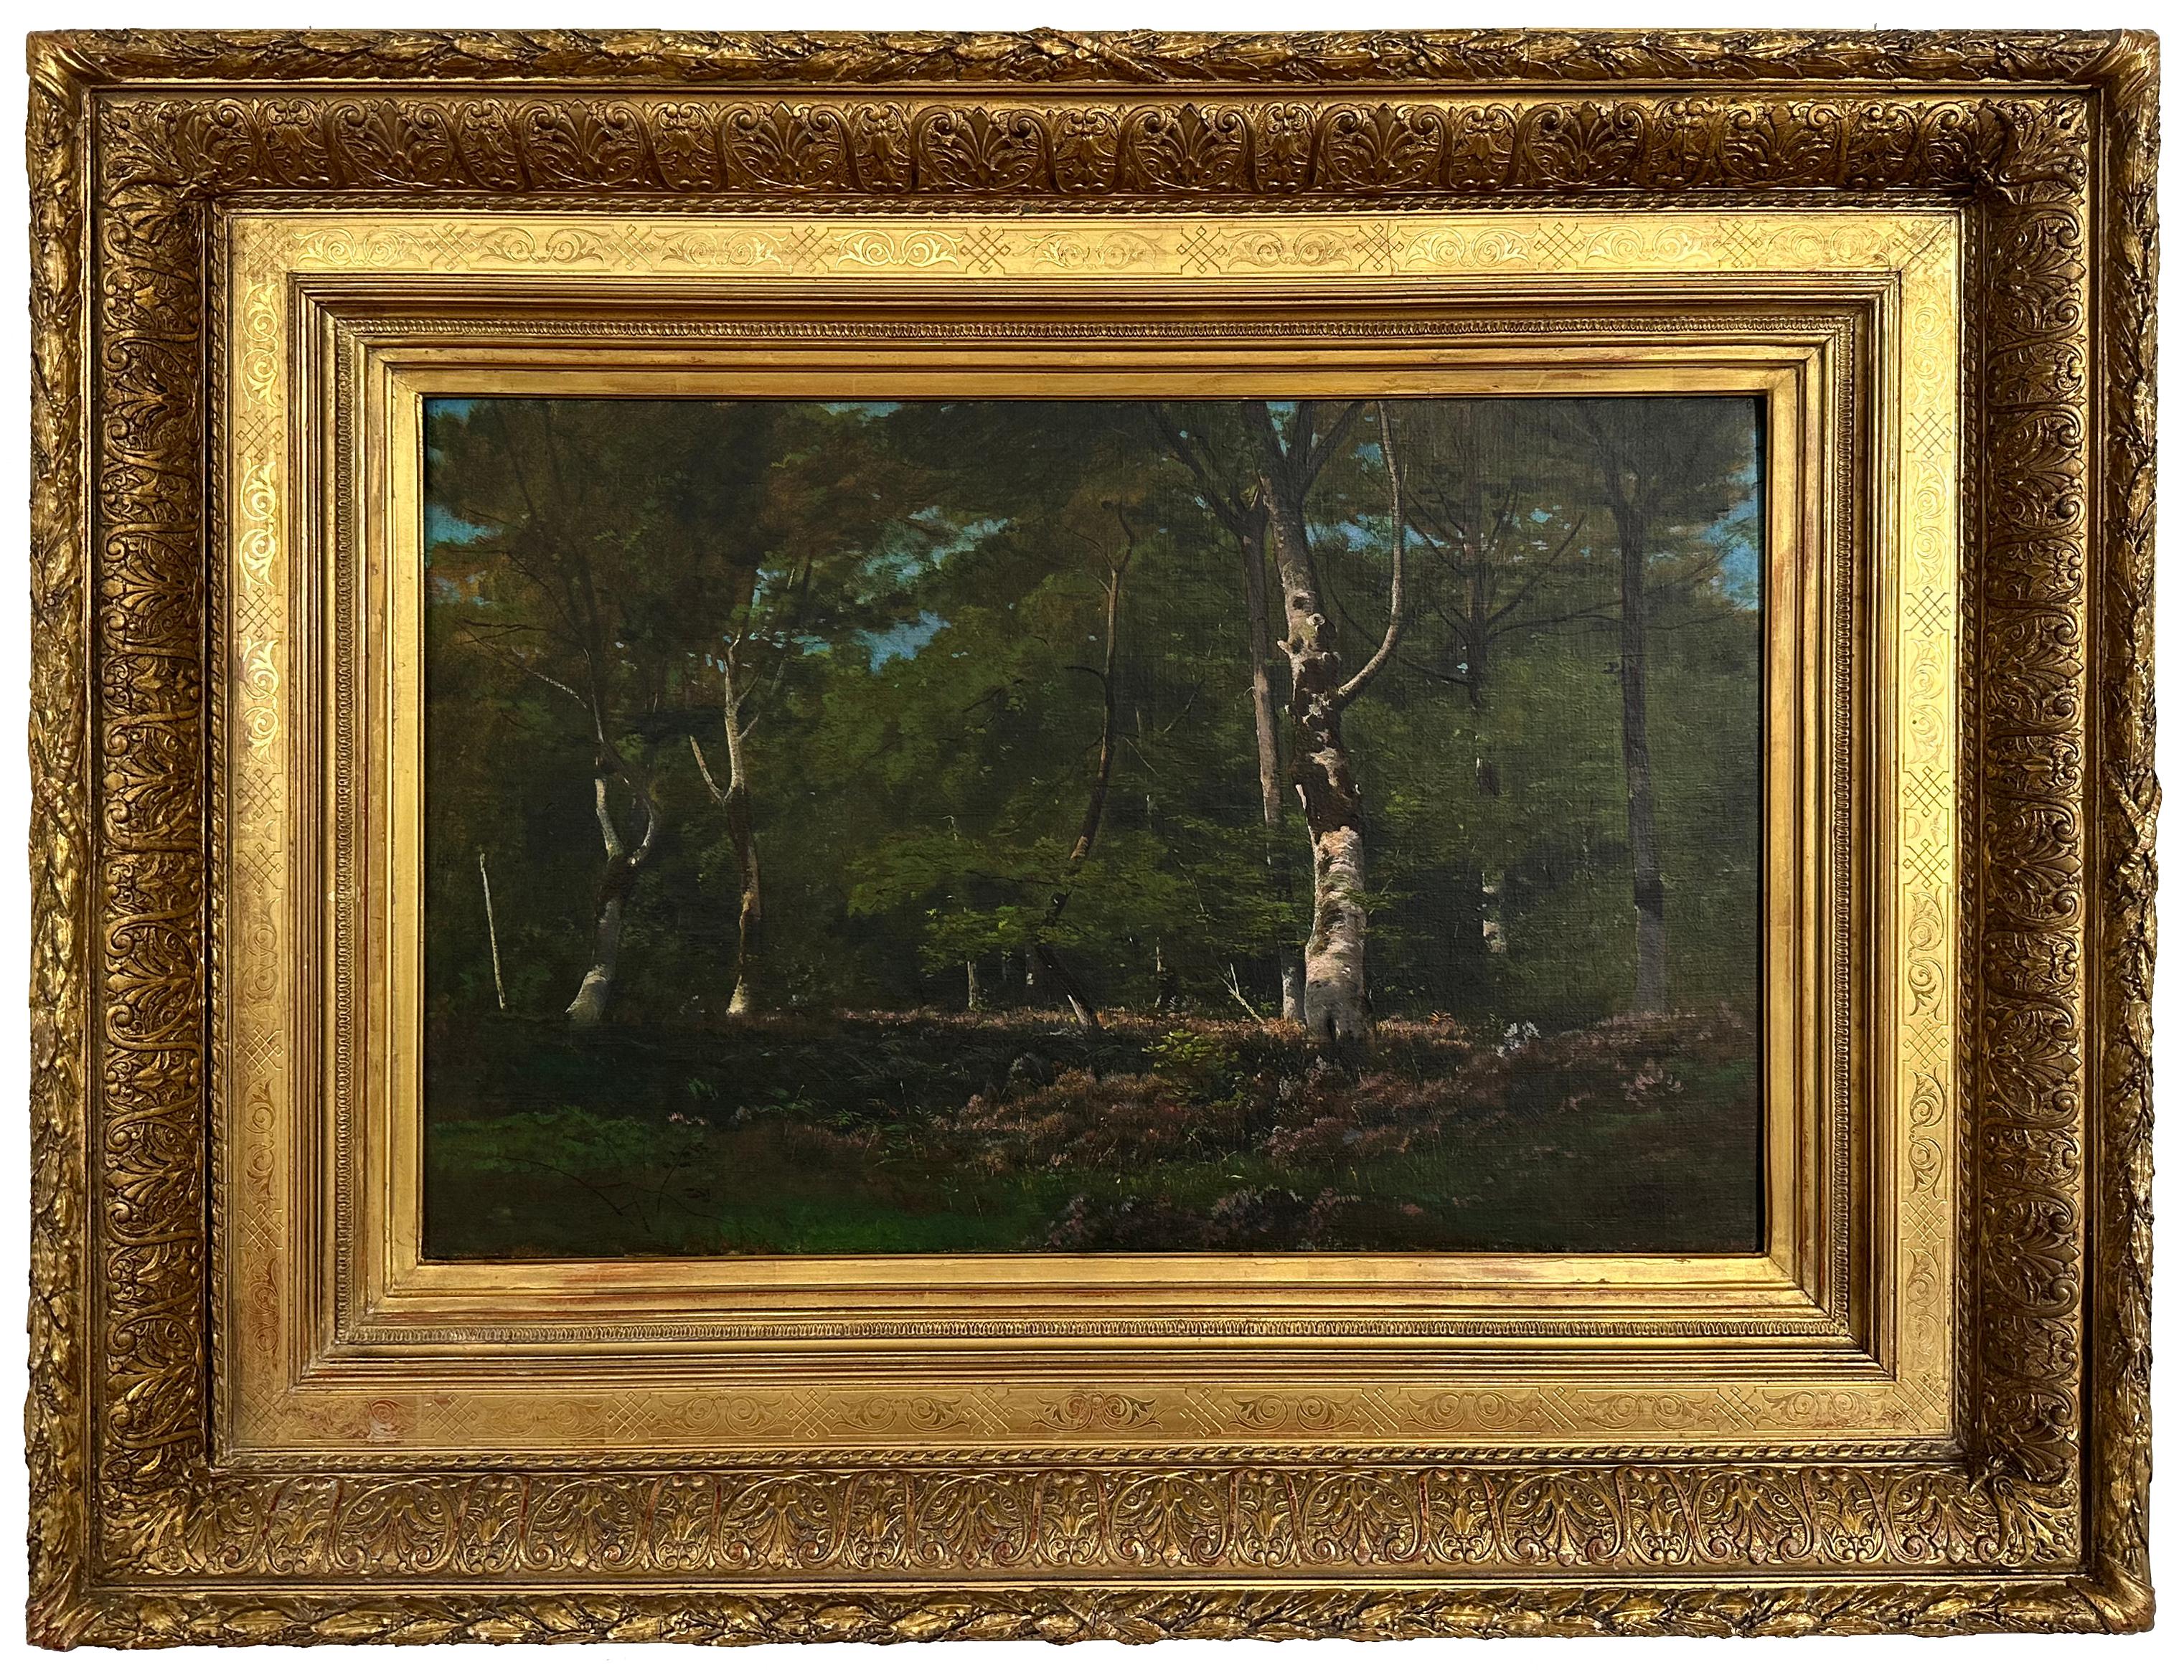 Un Sois-Bois, Barbizon forest scene - Painting by Leon Richet